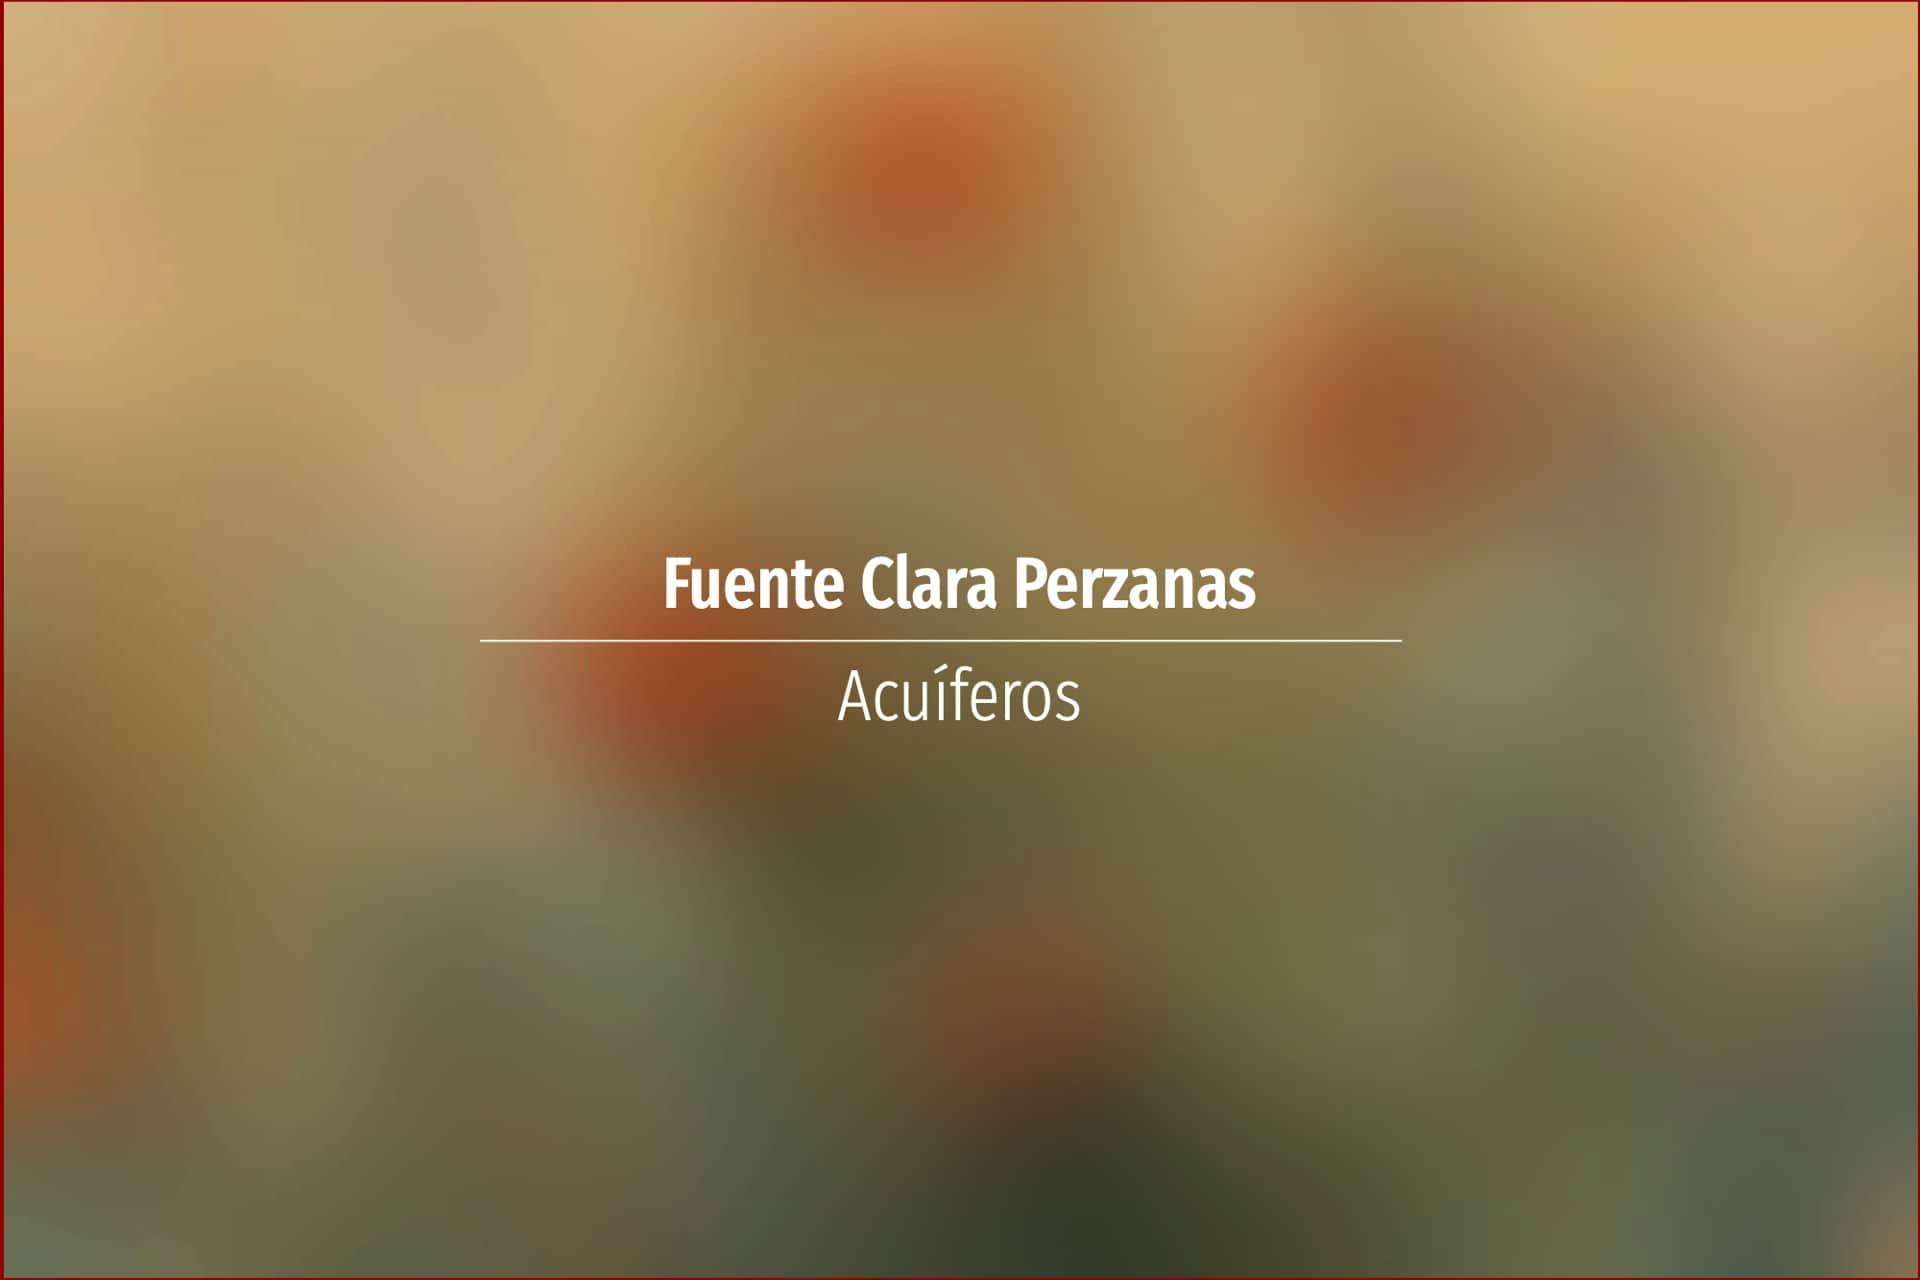 Fuente Clara Perzanas